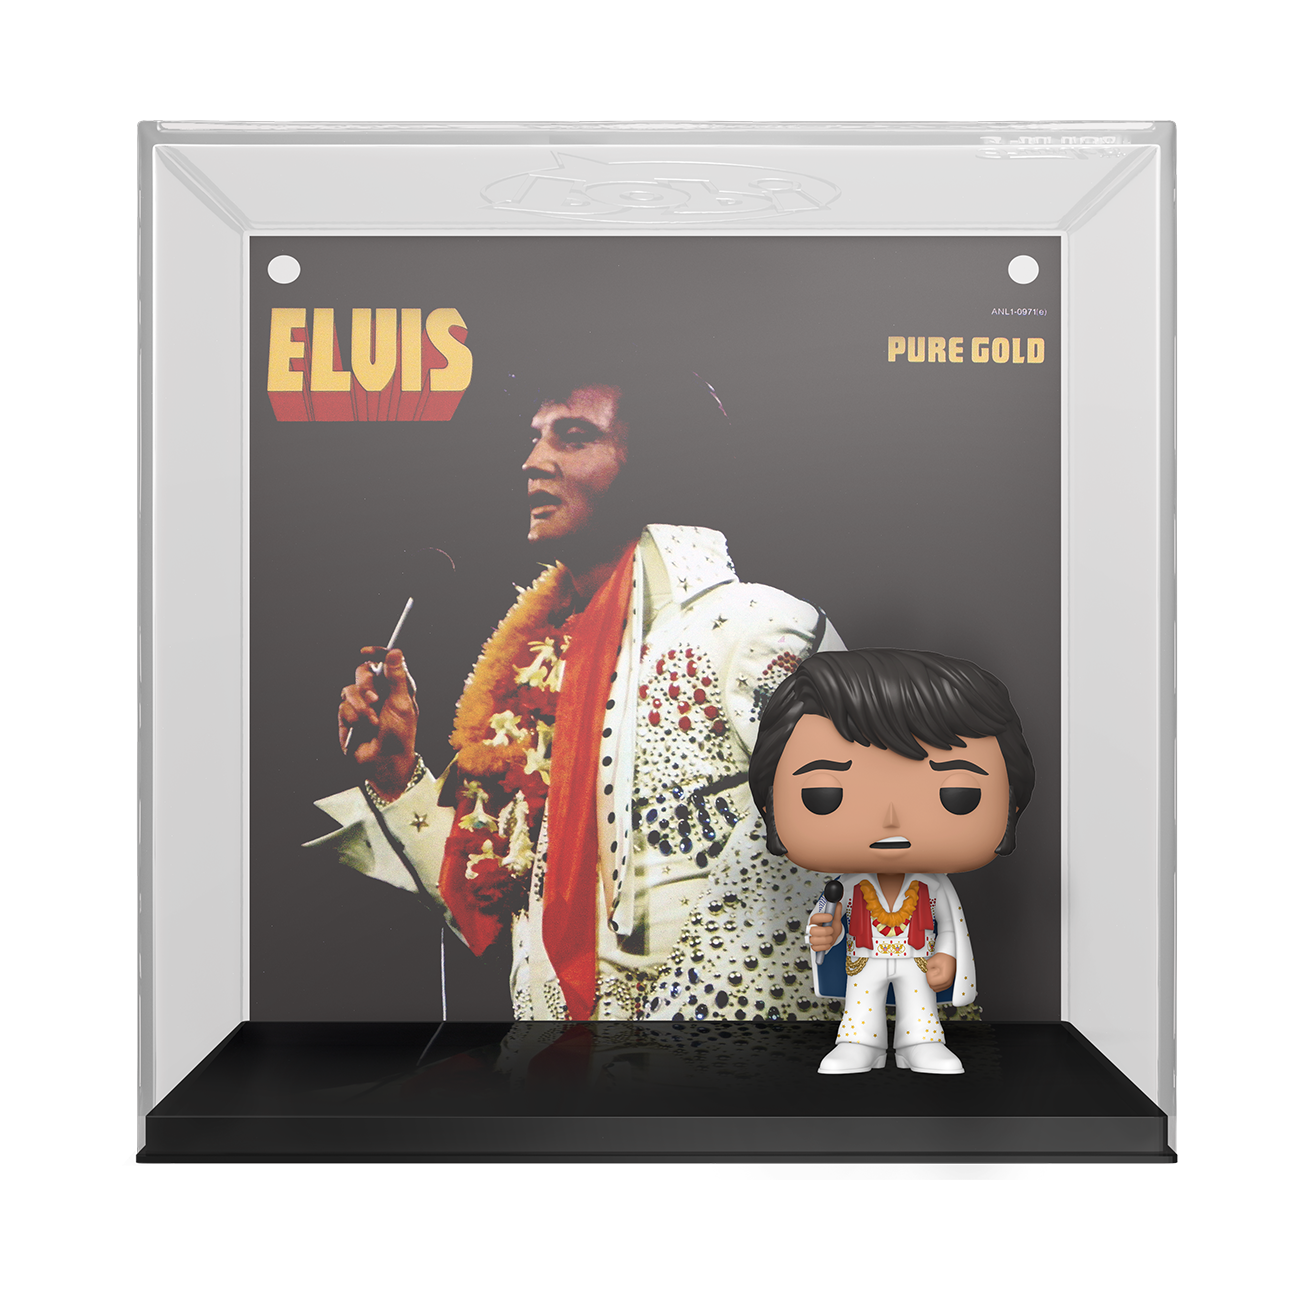 Funko Pop! Vinyl Figure Albums: Elvis - Pure Gold - Walmart Exclusive - image 2 of 5